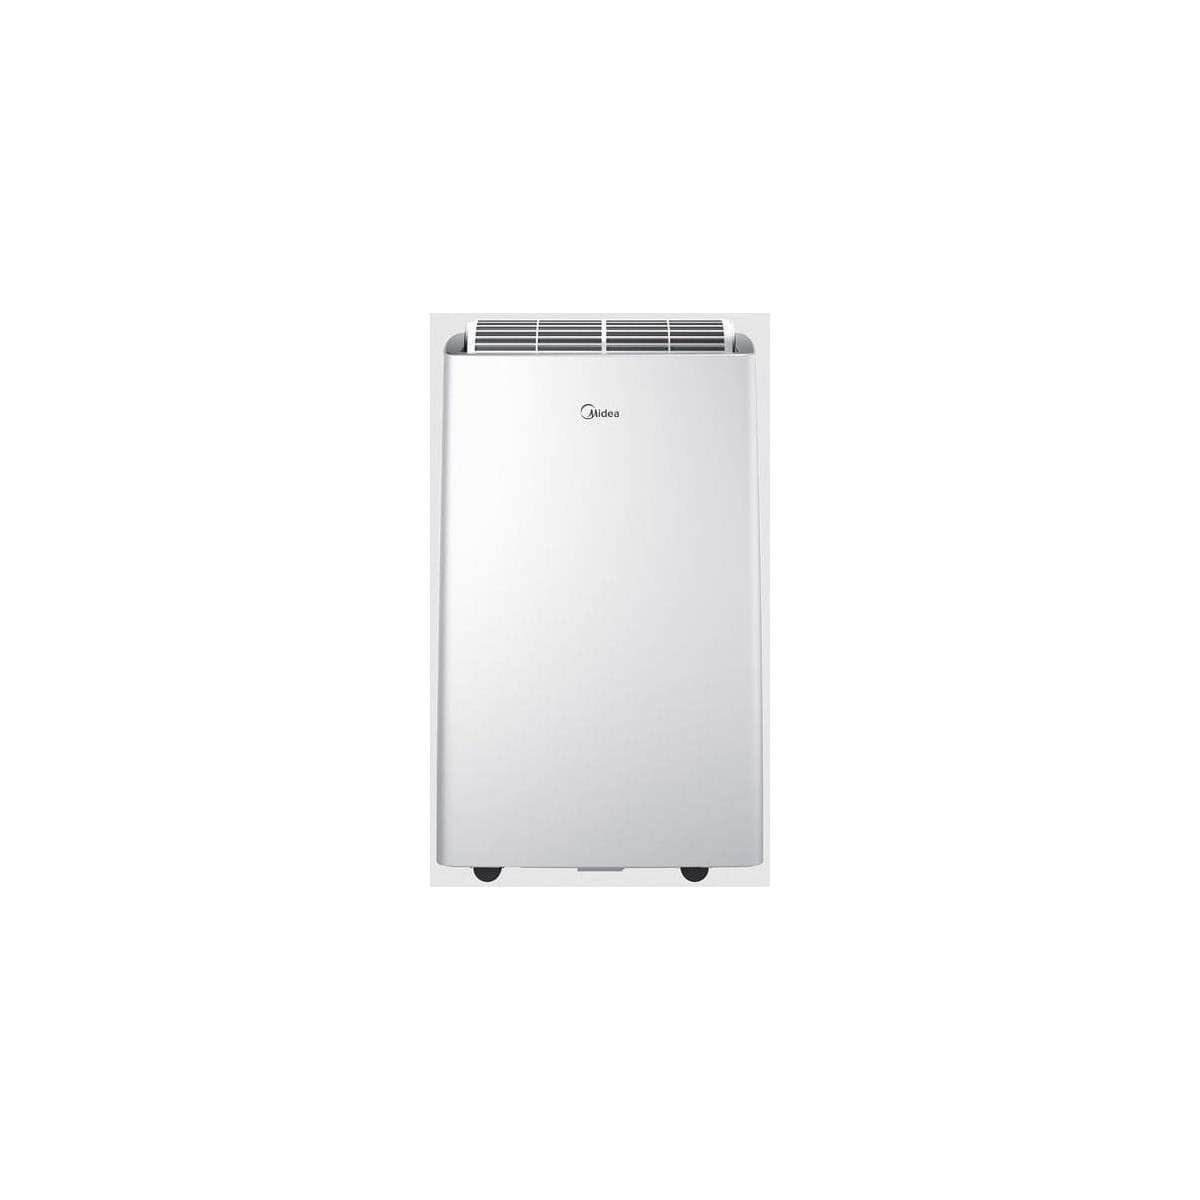 Tragbarer Klimaanlage kalt PT 3,5kW mit der Referenz 13907805 von der Marke MIDEA